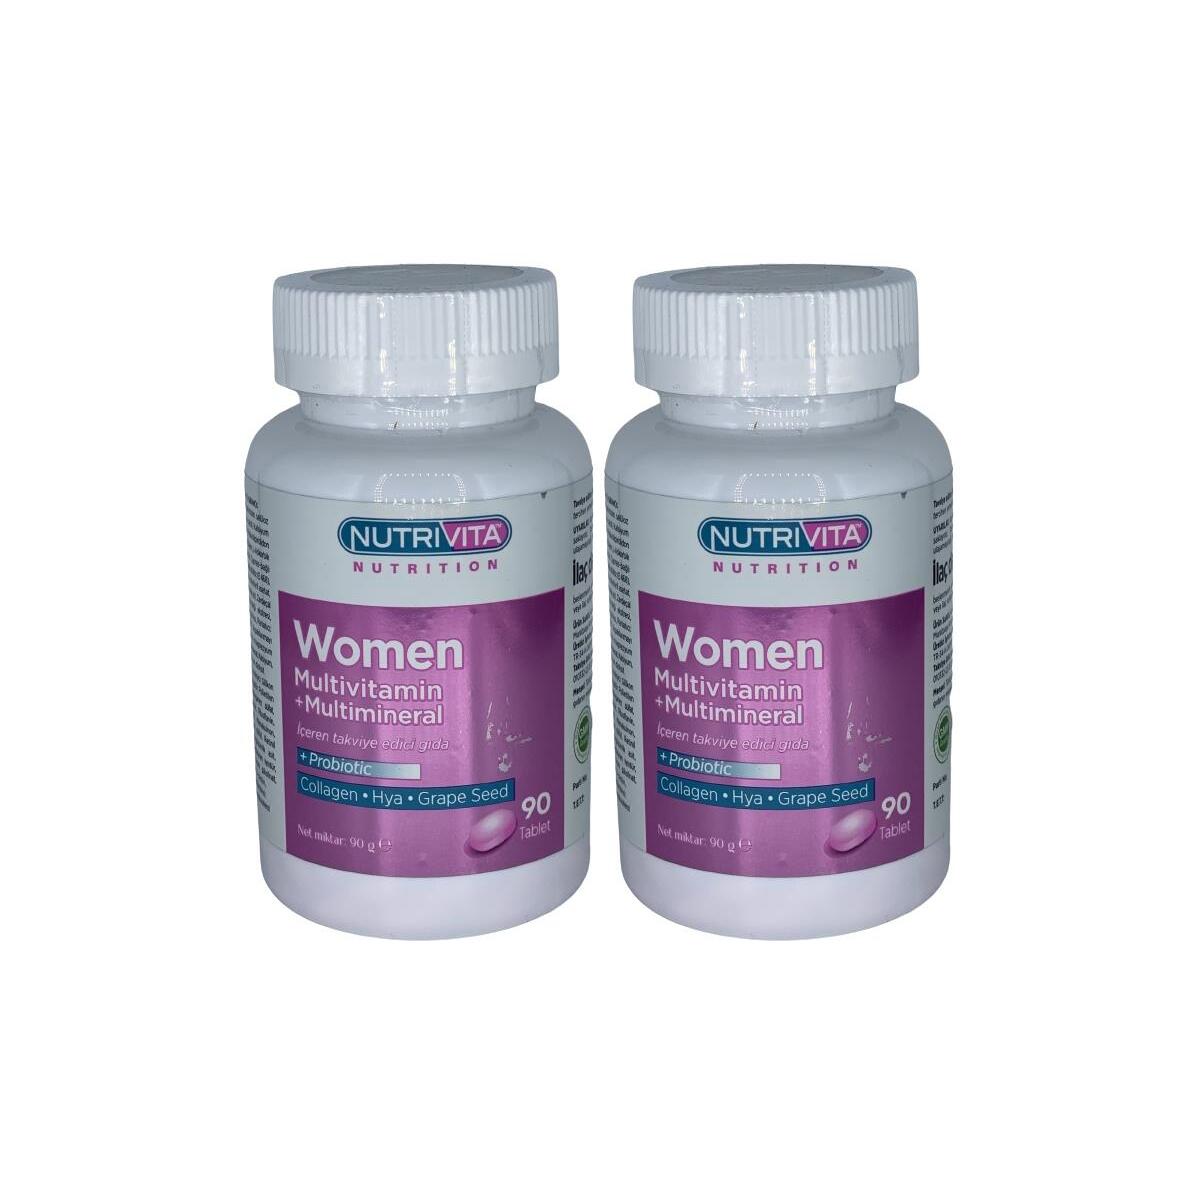 Nutrivita Nutrition Women Multivitamin Multimineral 2X90 Tablet Probiotic Hidrolize Collagen